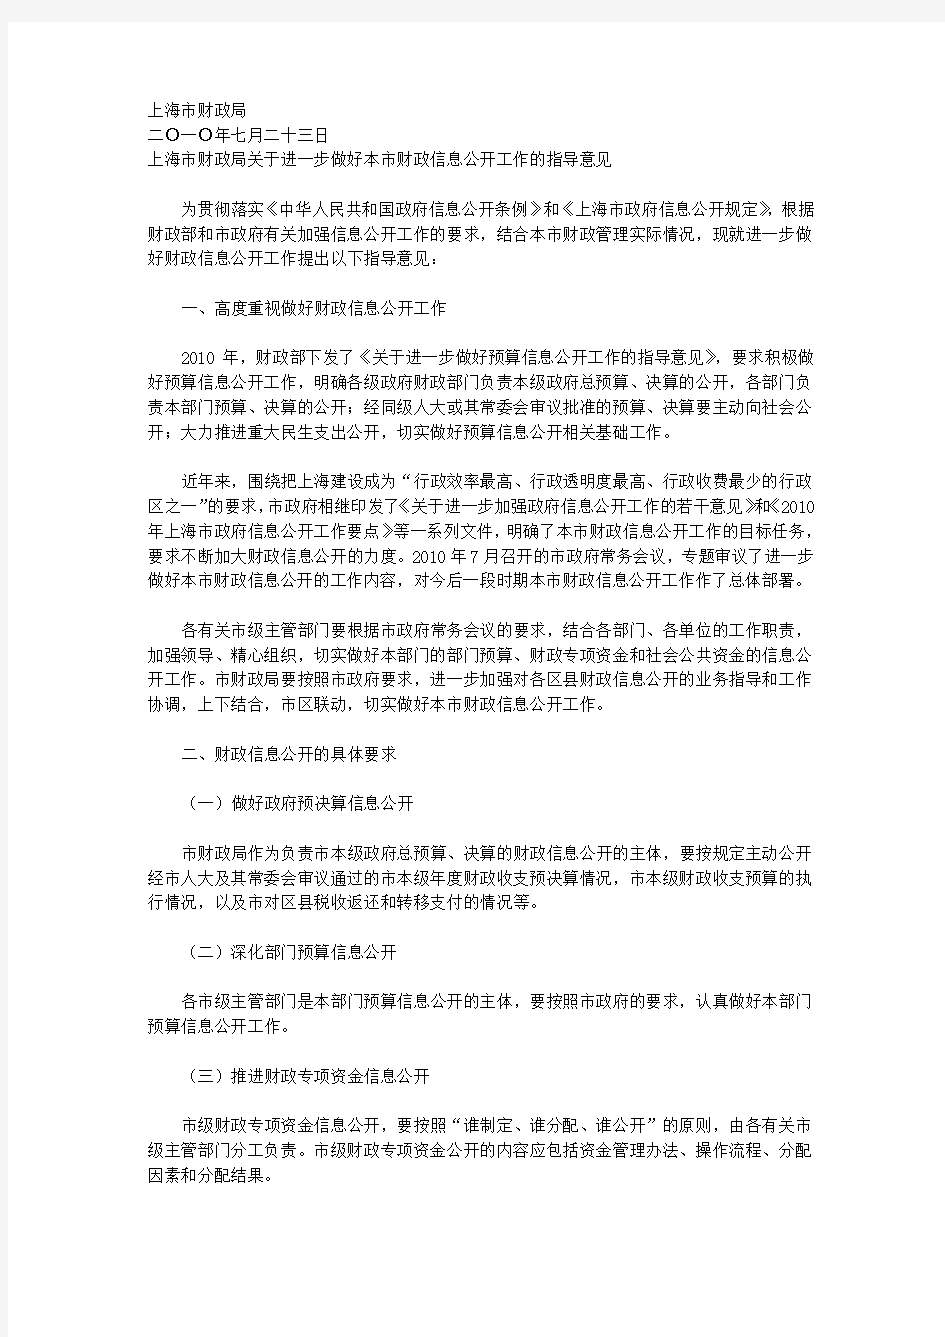 上海市财政局关于印发《关于进一步做好本市财政信息公开工作的指导